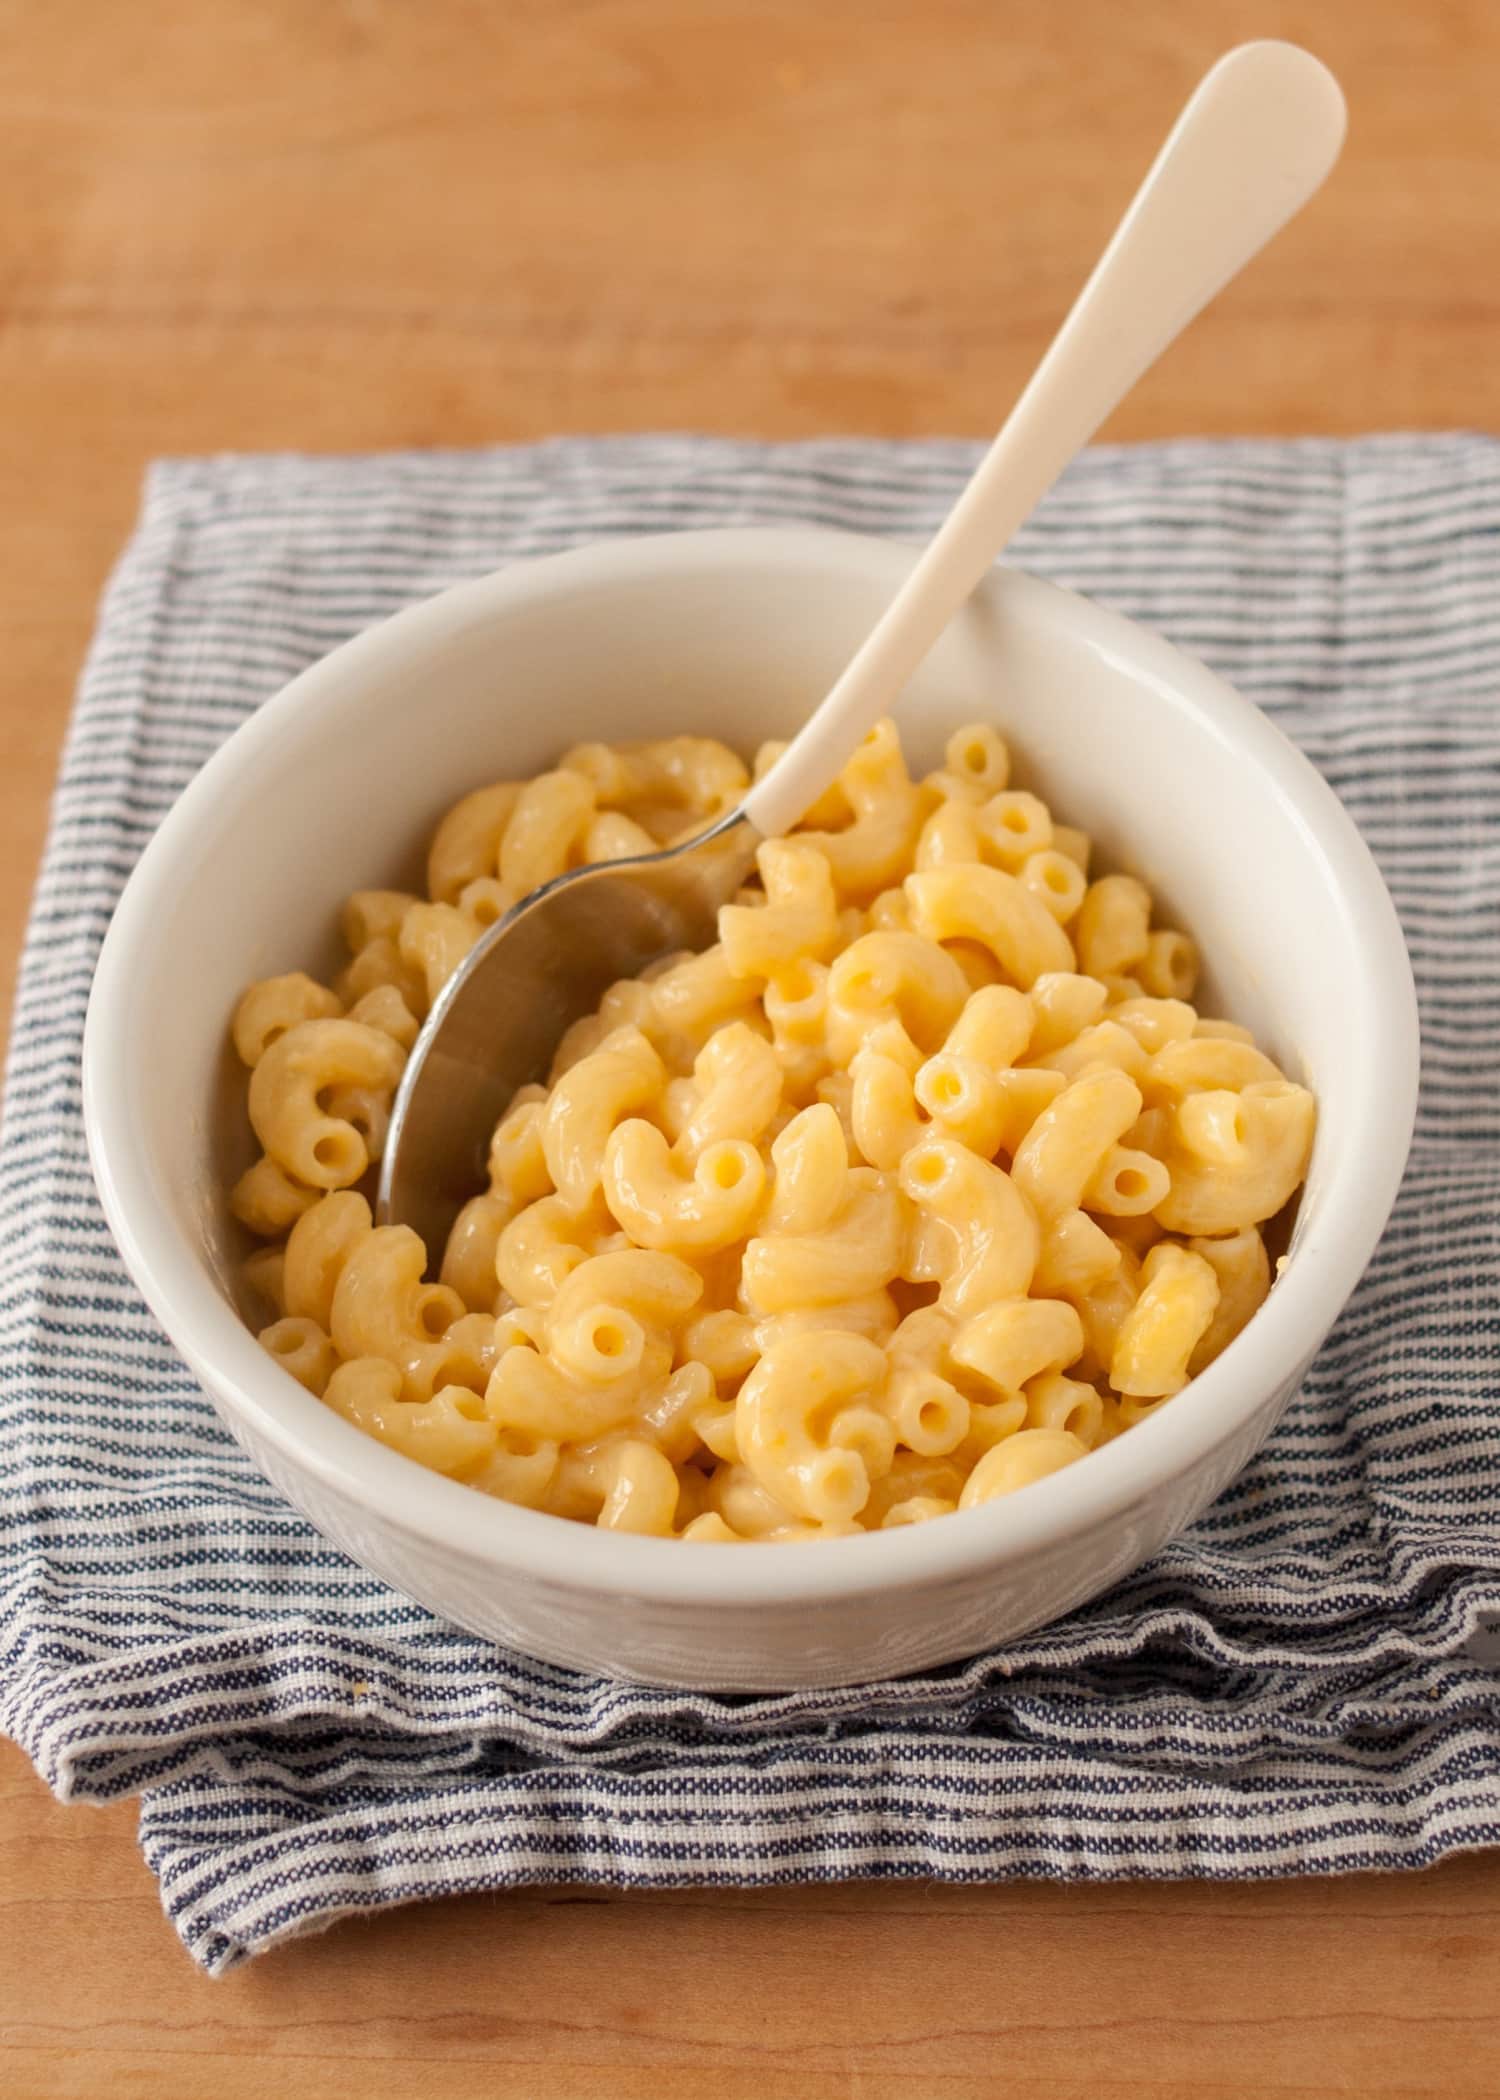 how to make macaroni cheese